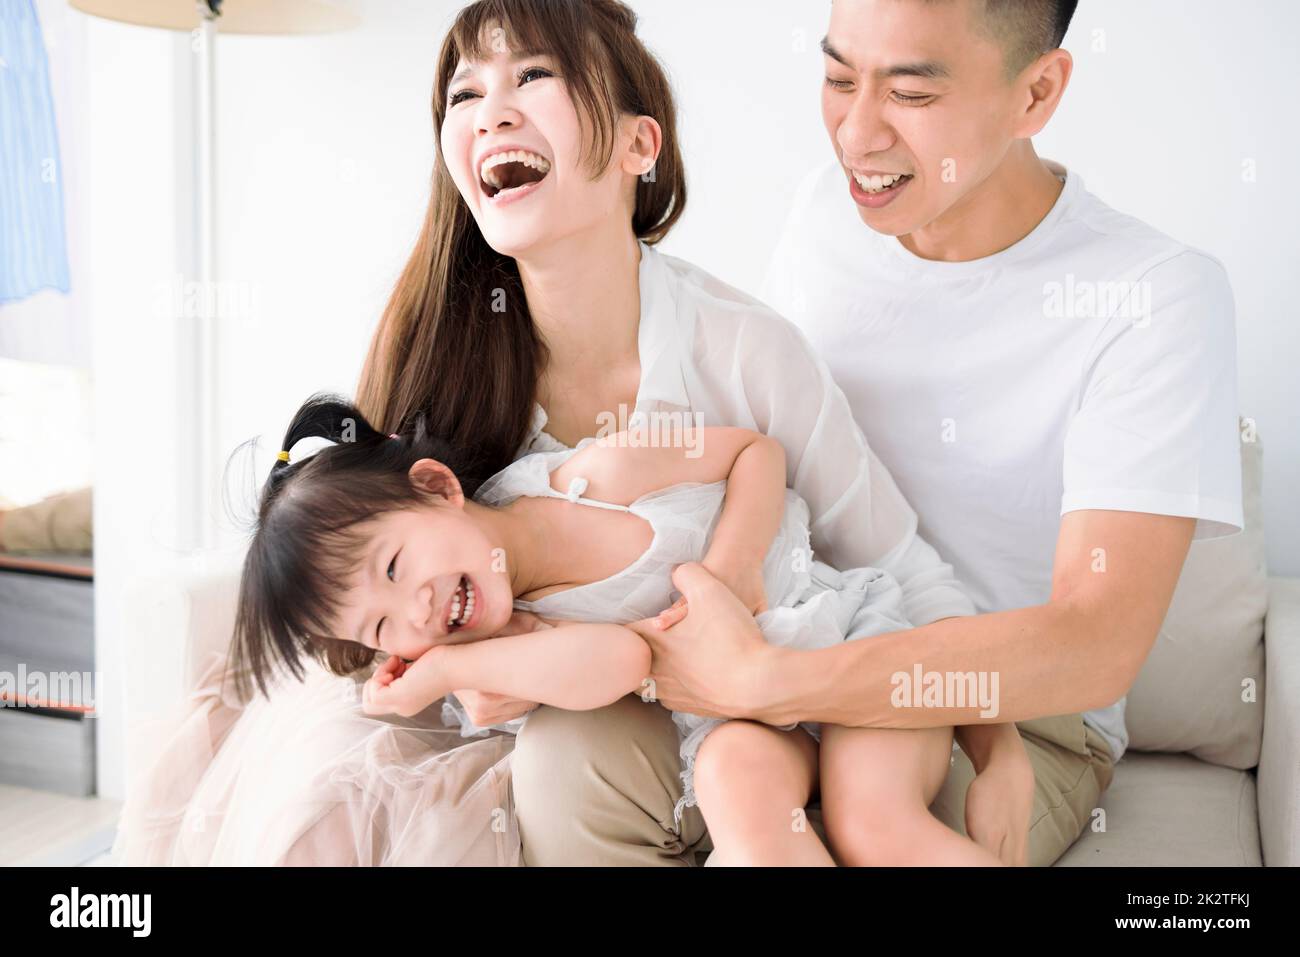 Happy Asian family having fun at home. Stock Photo